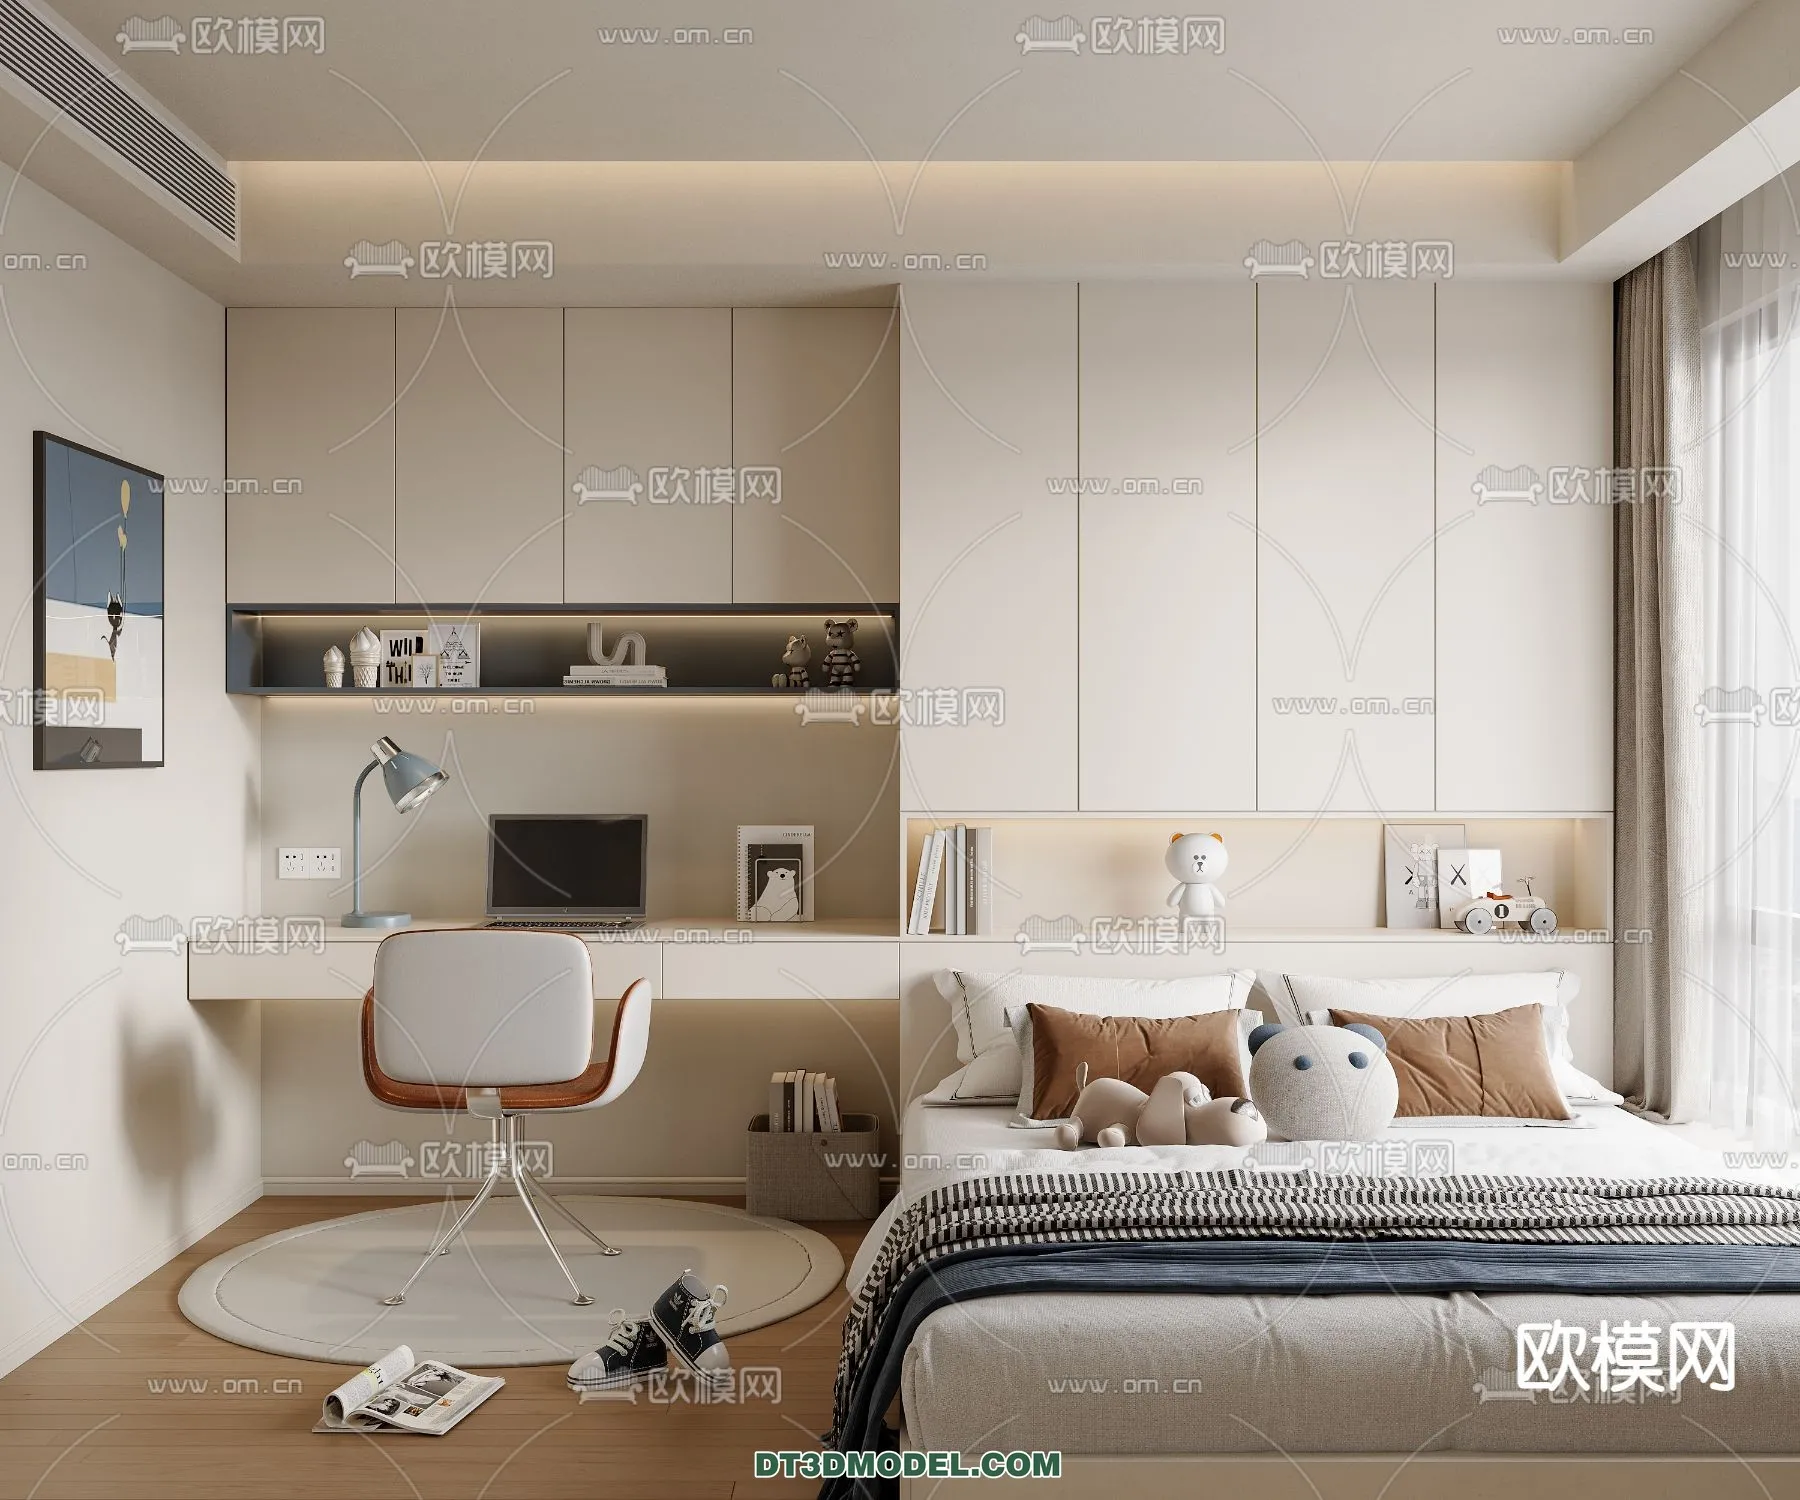 Tatami Bedroom – Japan Bedroom – 3D Scene – 046